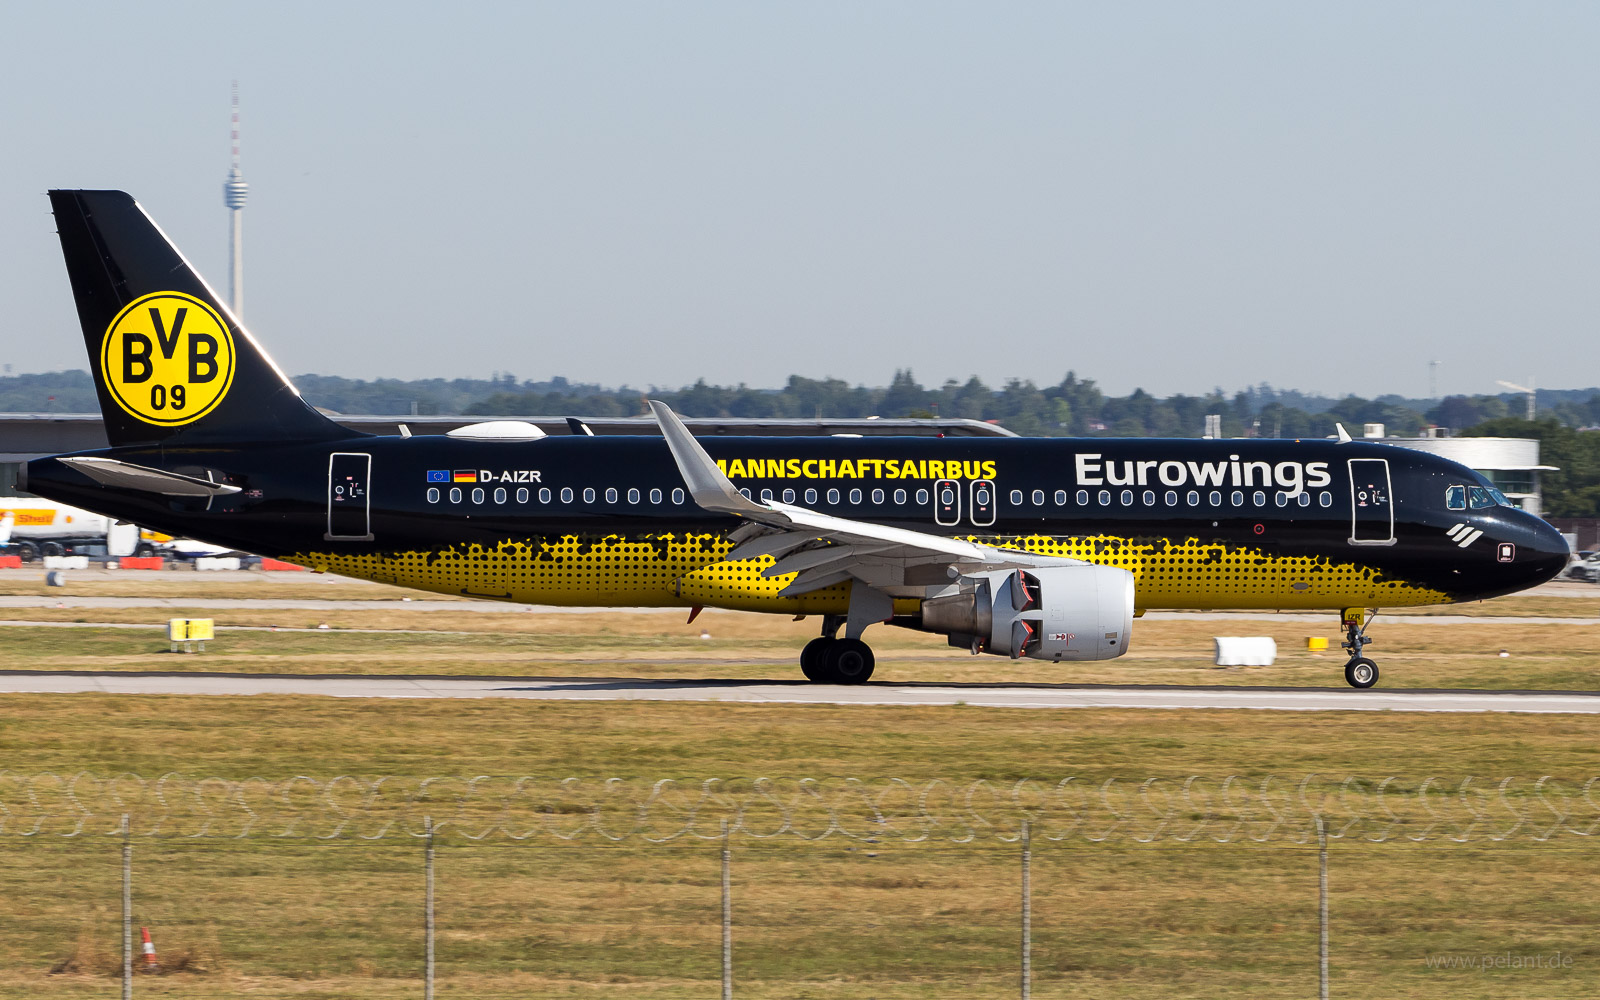 D-AIZR Eurowings Airbus A320-214 in Stuttgart / STR (BVB Mannschaftsairbus Livery)